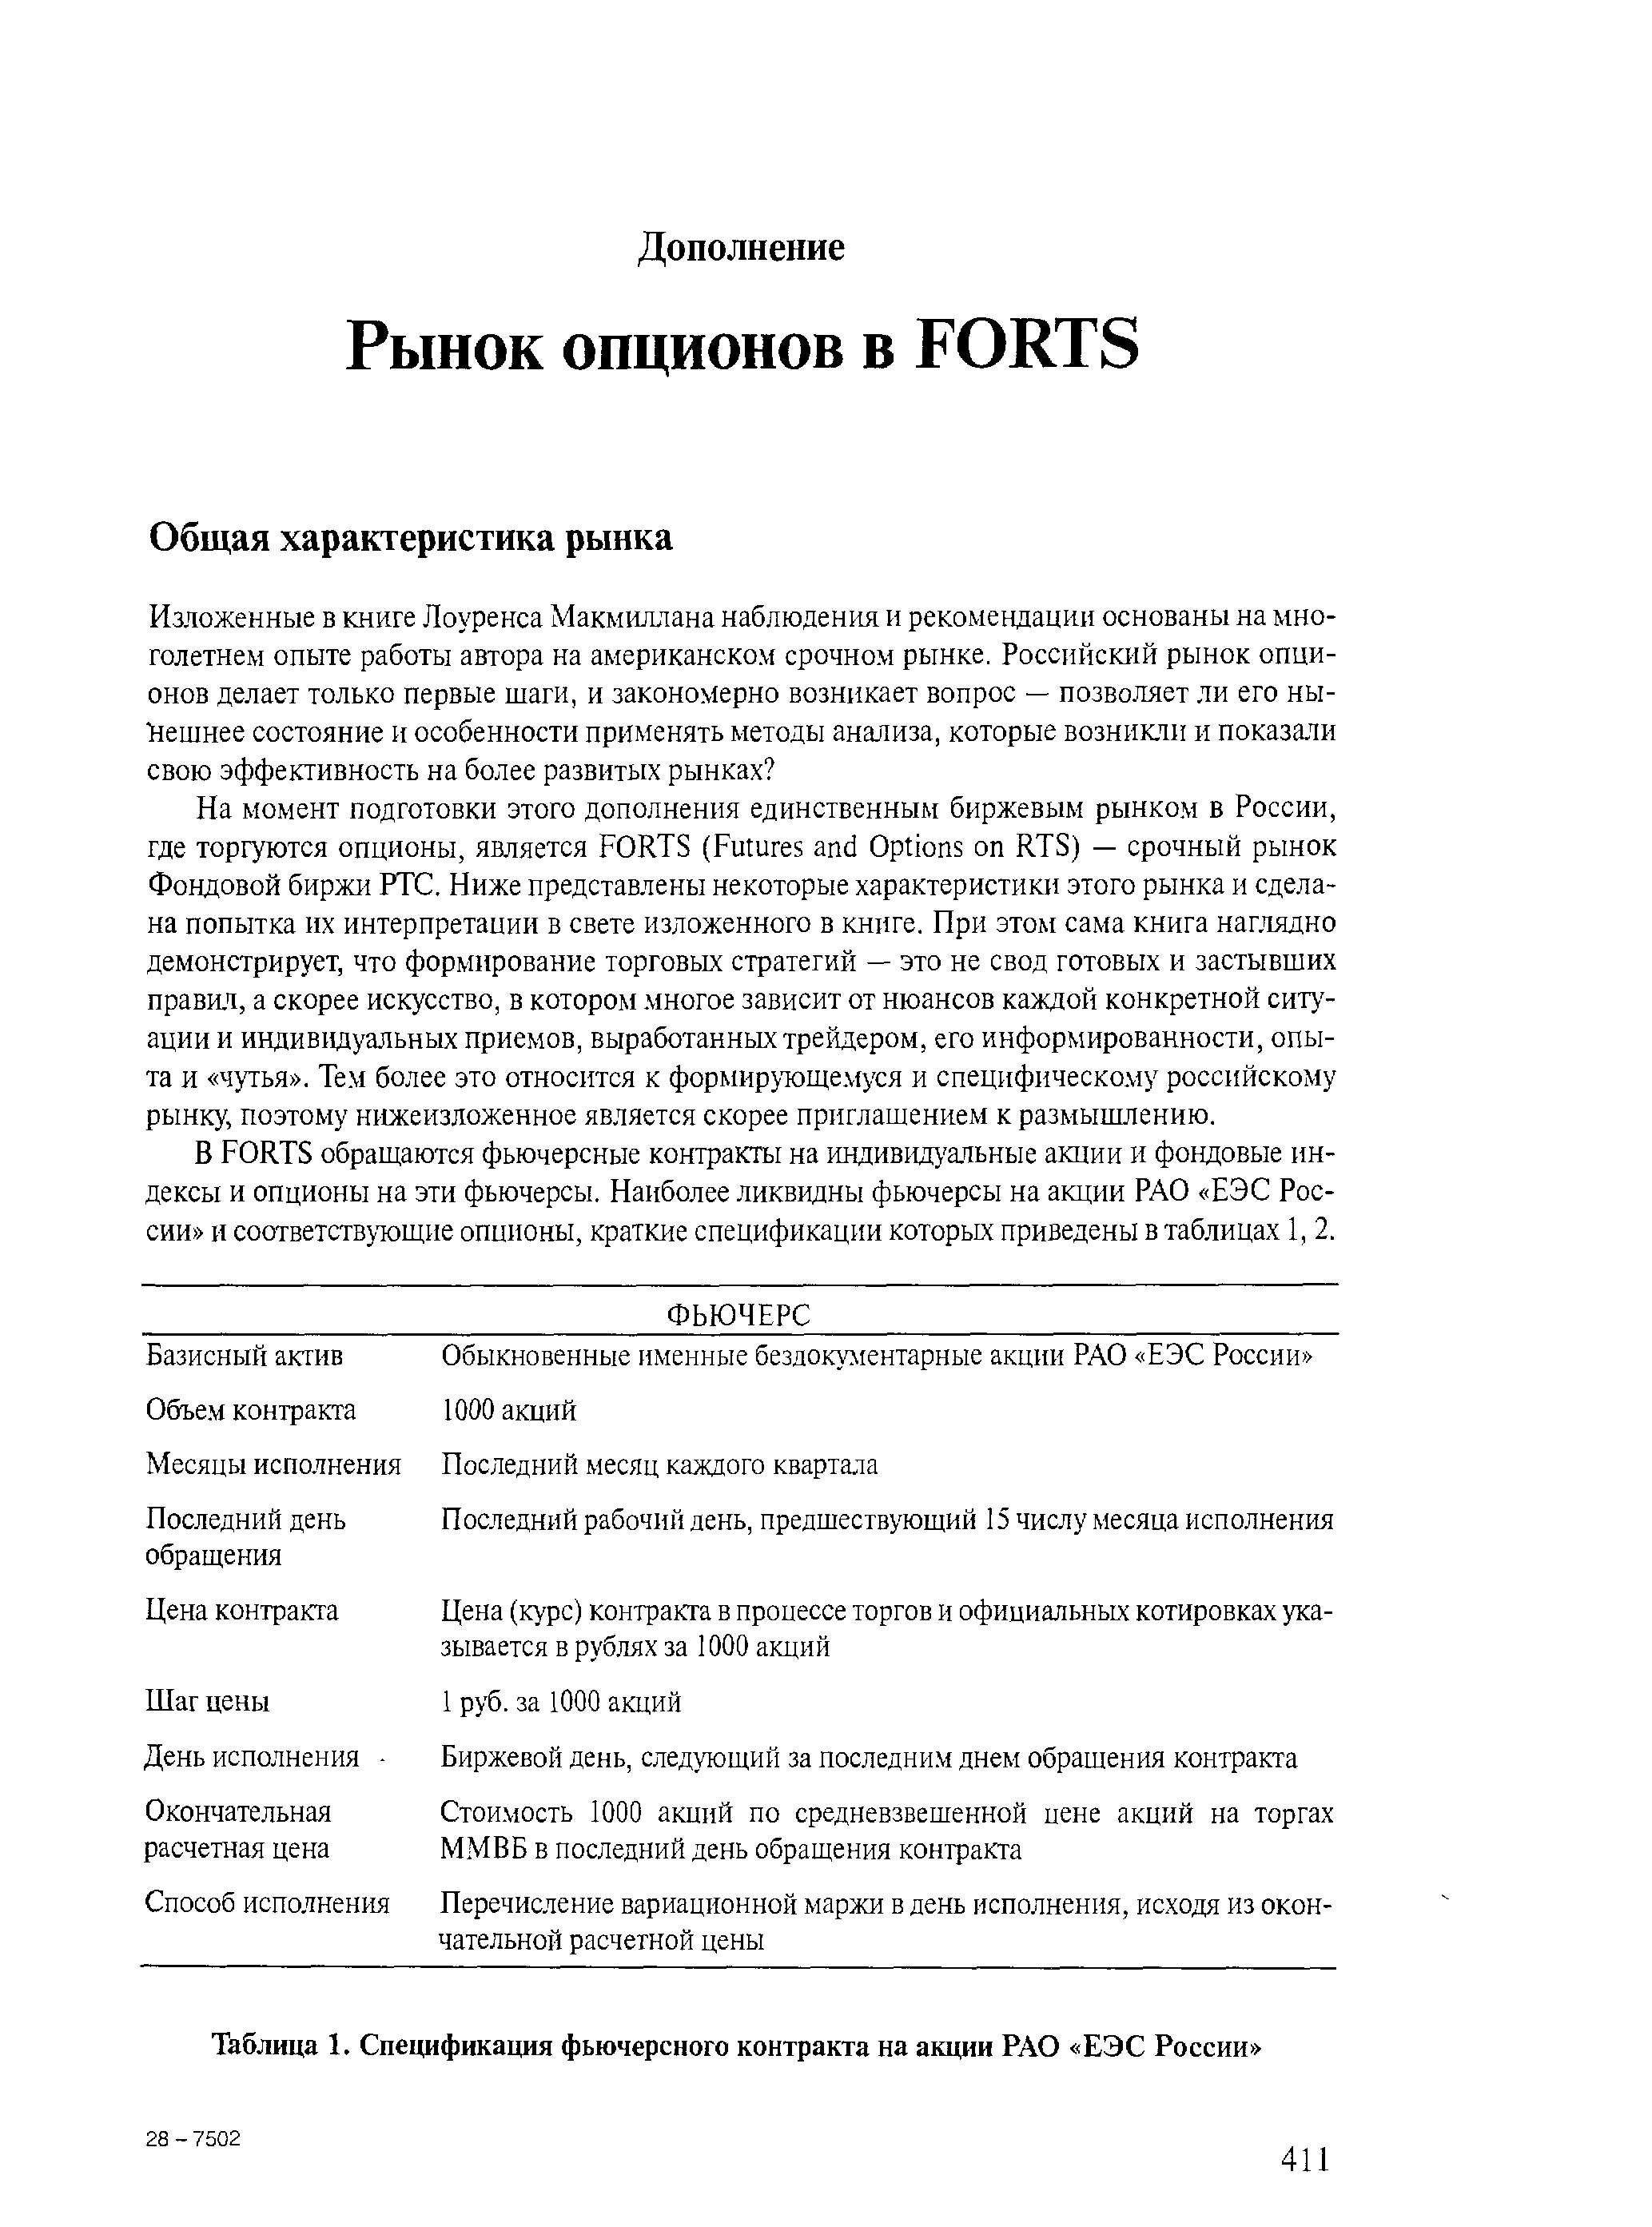 Таблица 1. Спецификация фьючерсного контракта на акции РАО ЕЭС России 
